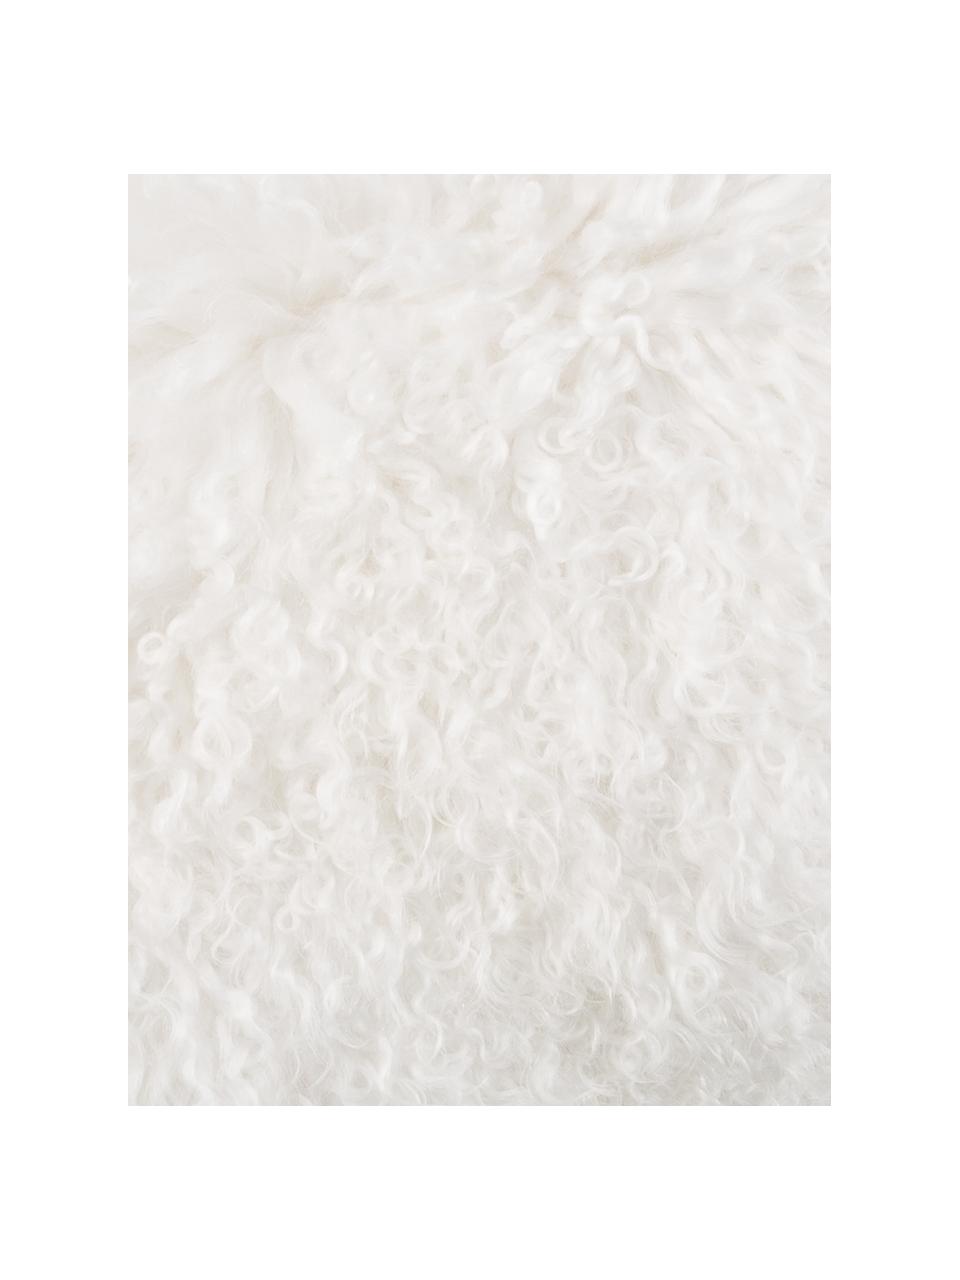 Federa arredo in pelle di agnello a pelo lungo riccio bianco Ella, Retro: 100% poliestere, Bianco naturale, Larg. 30 x Lung. 50 cm